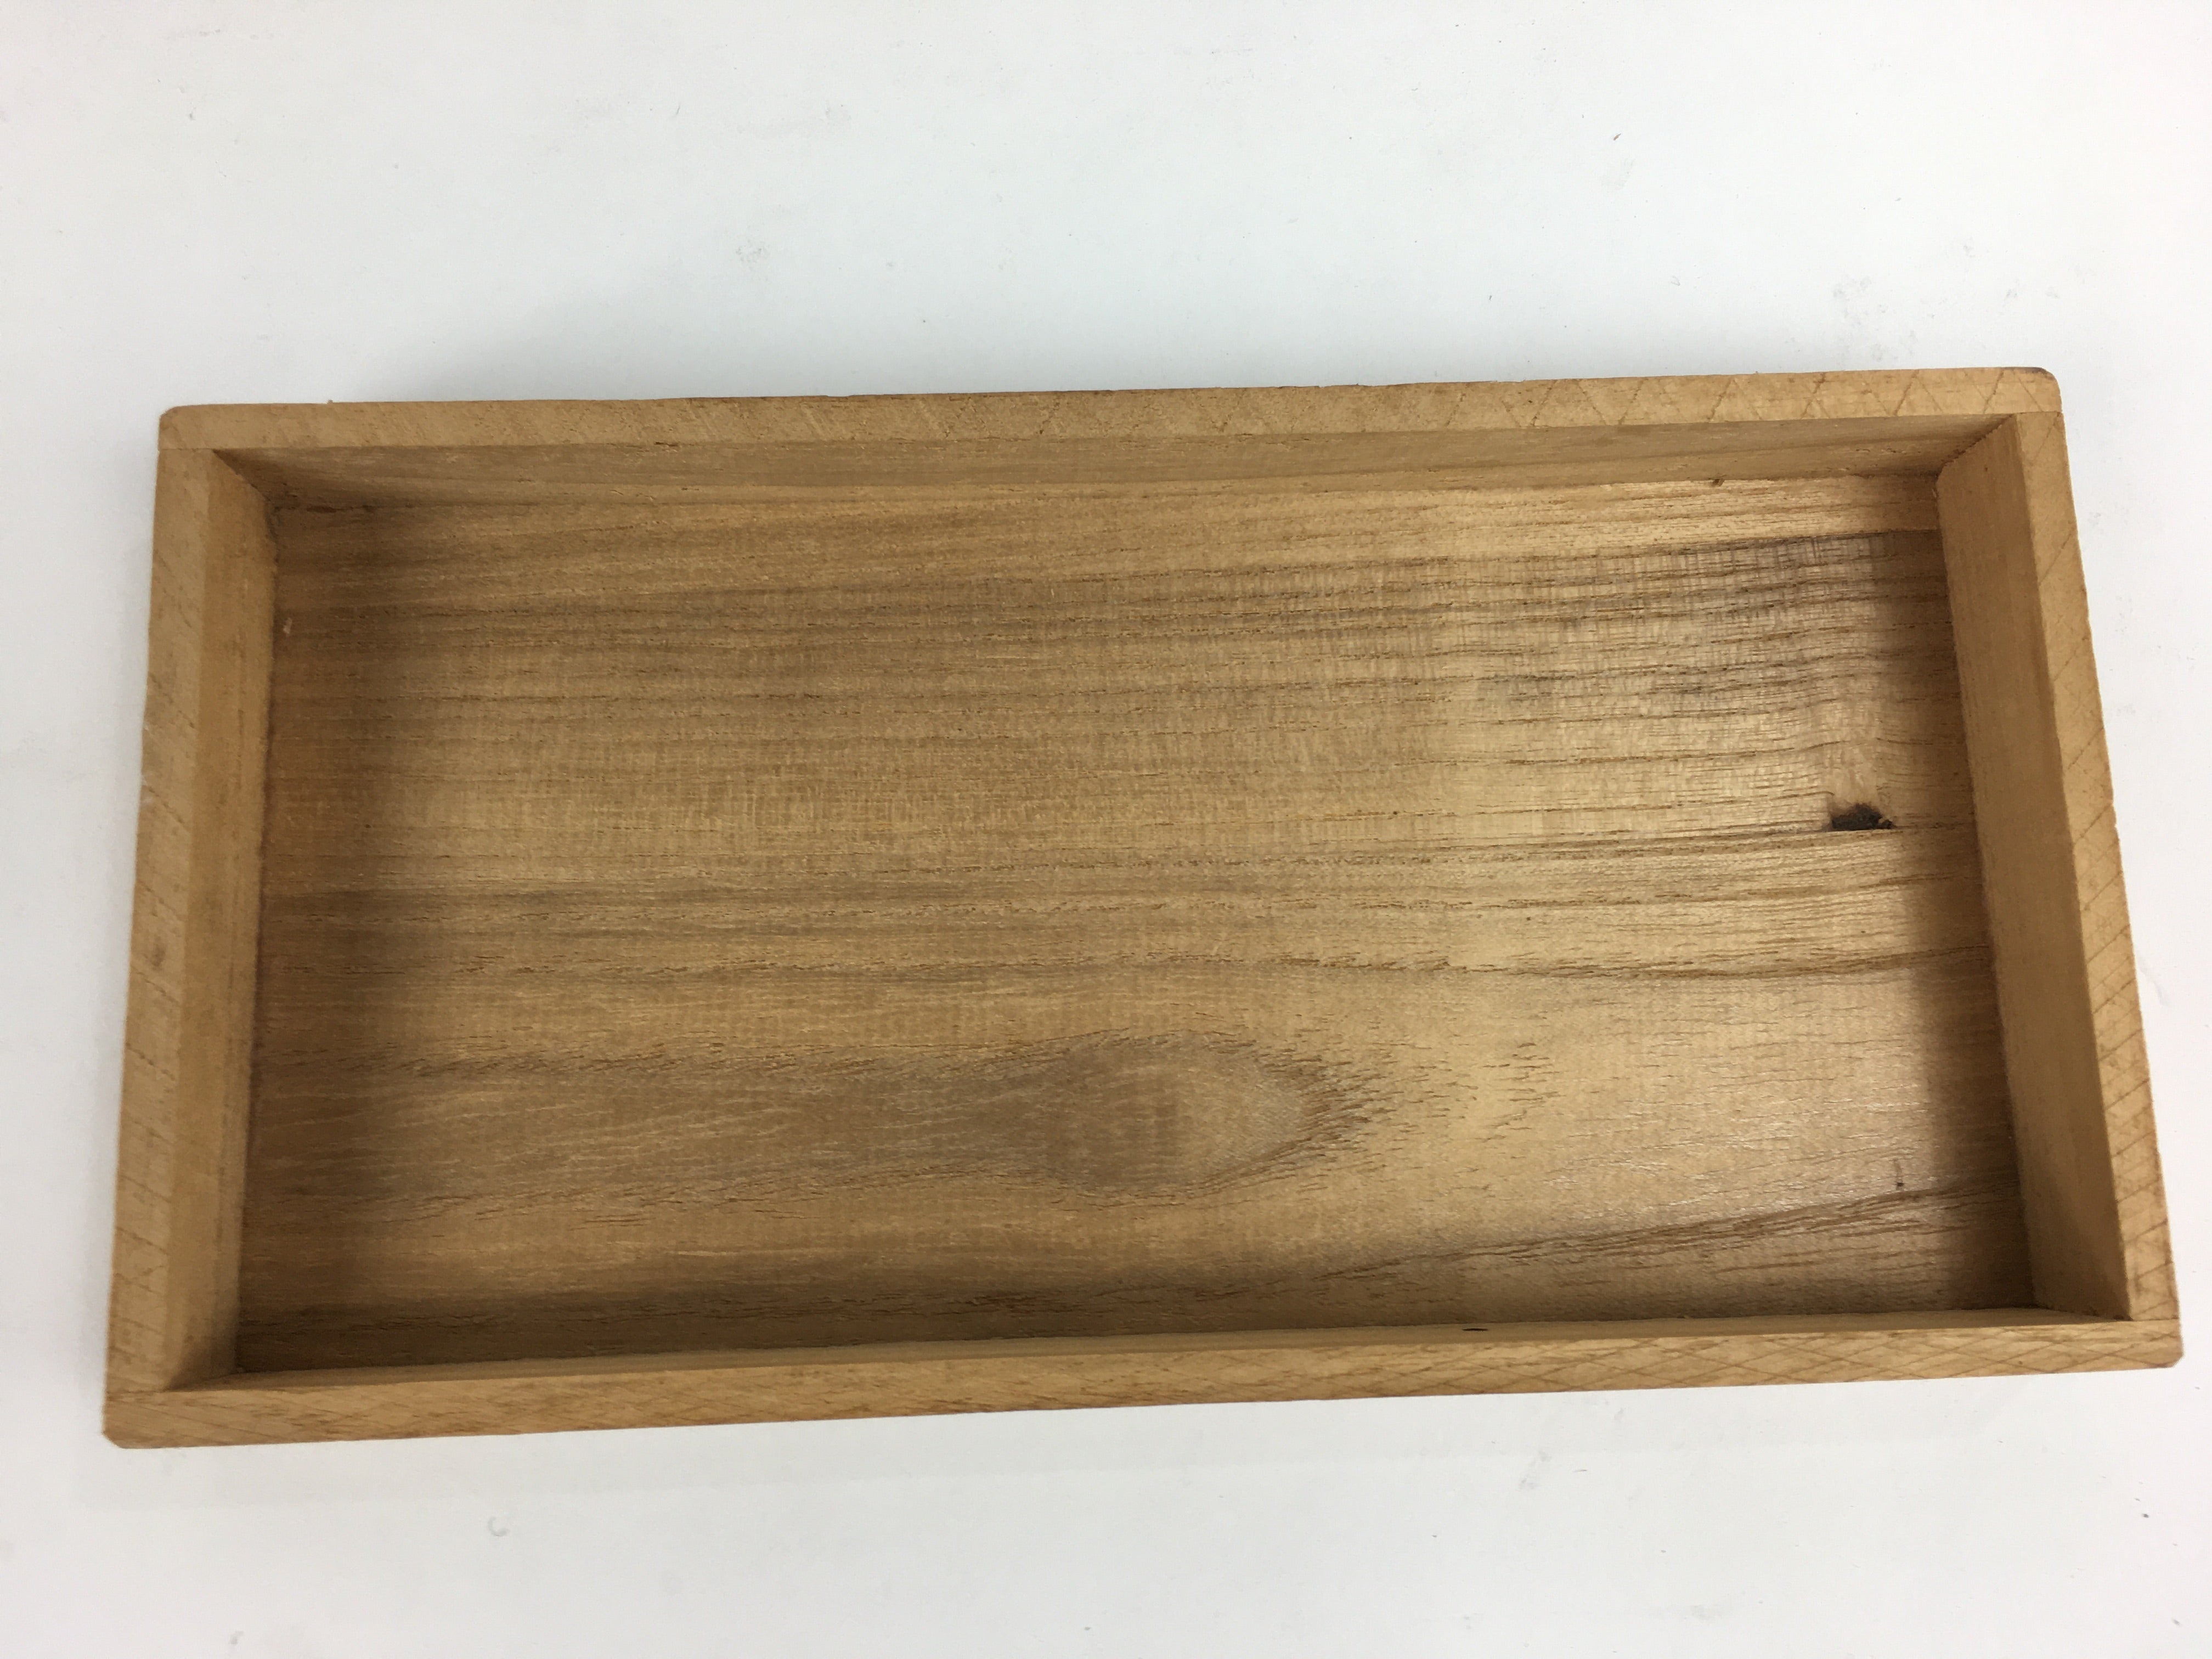 Japanese Wooden Storage Box Vtg Pottery Hako Inside 8.2x17.2x2.2cm WB888